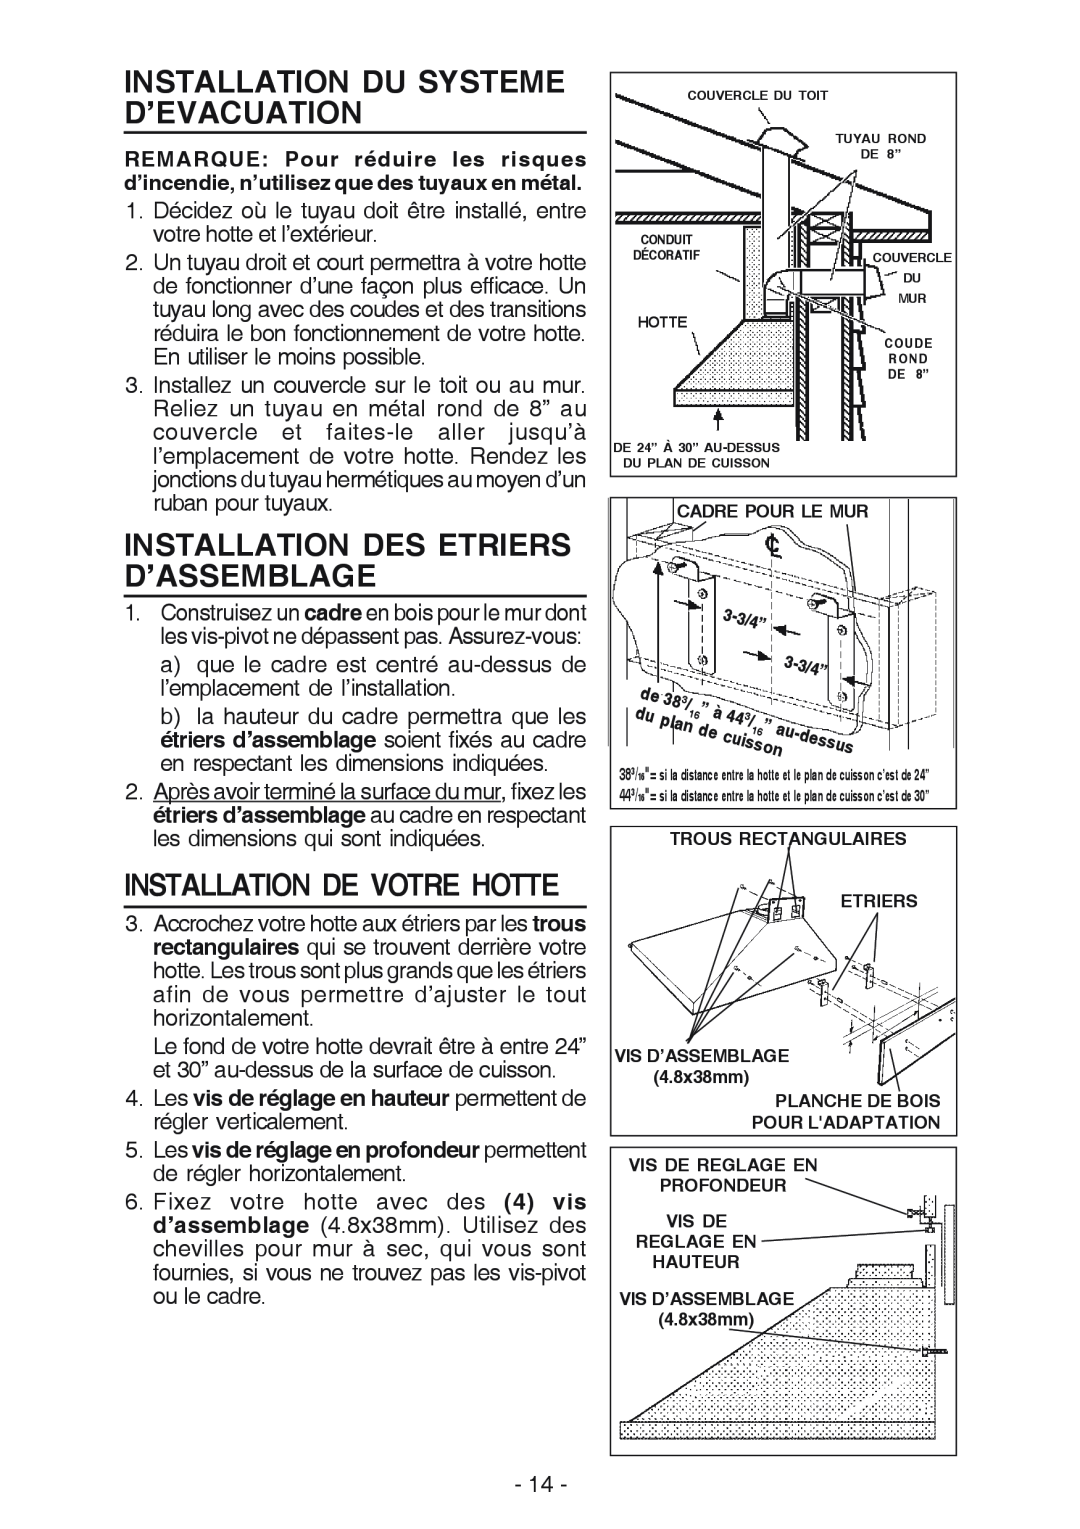 Best K42 manual Installation Du Systeme D’Evacuation, Installation Des Etriers D’Assemblage, Installation De Votre Hotte 